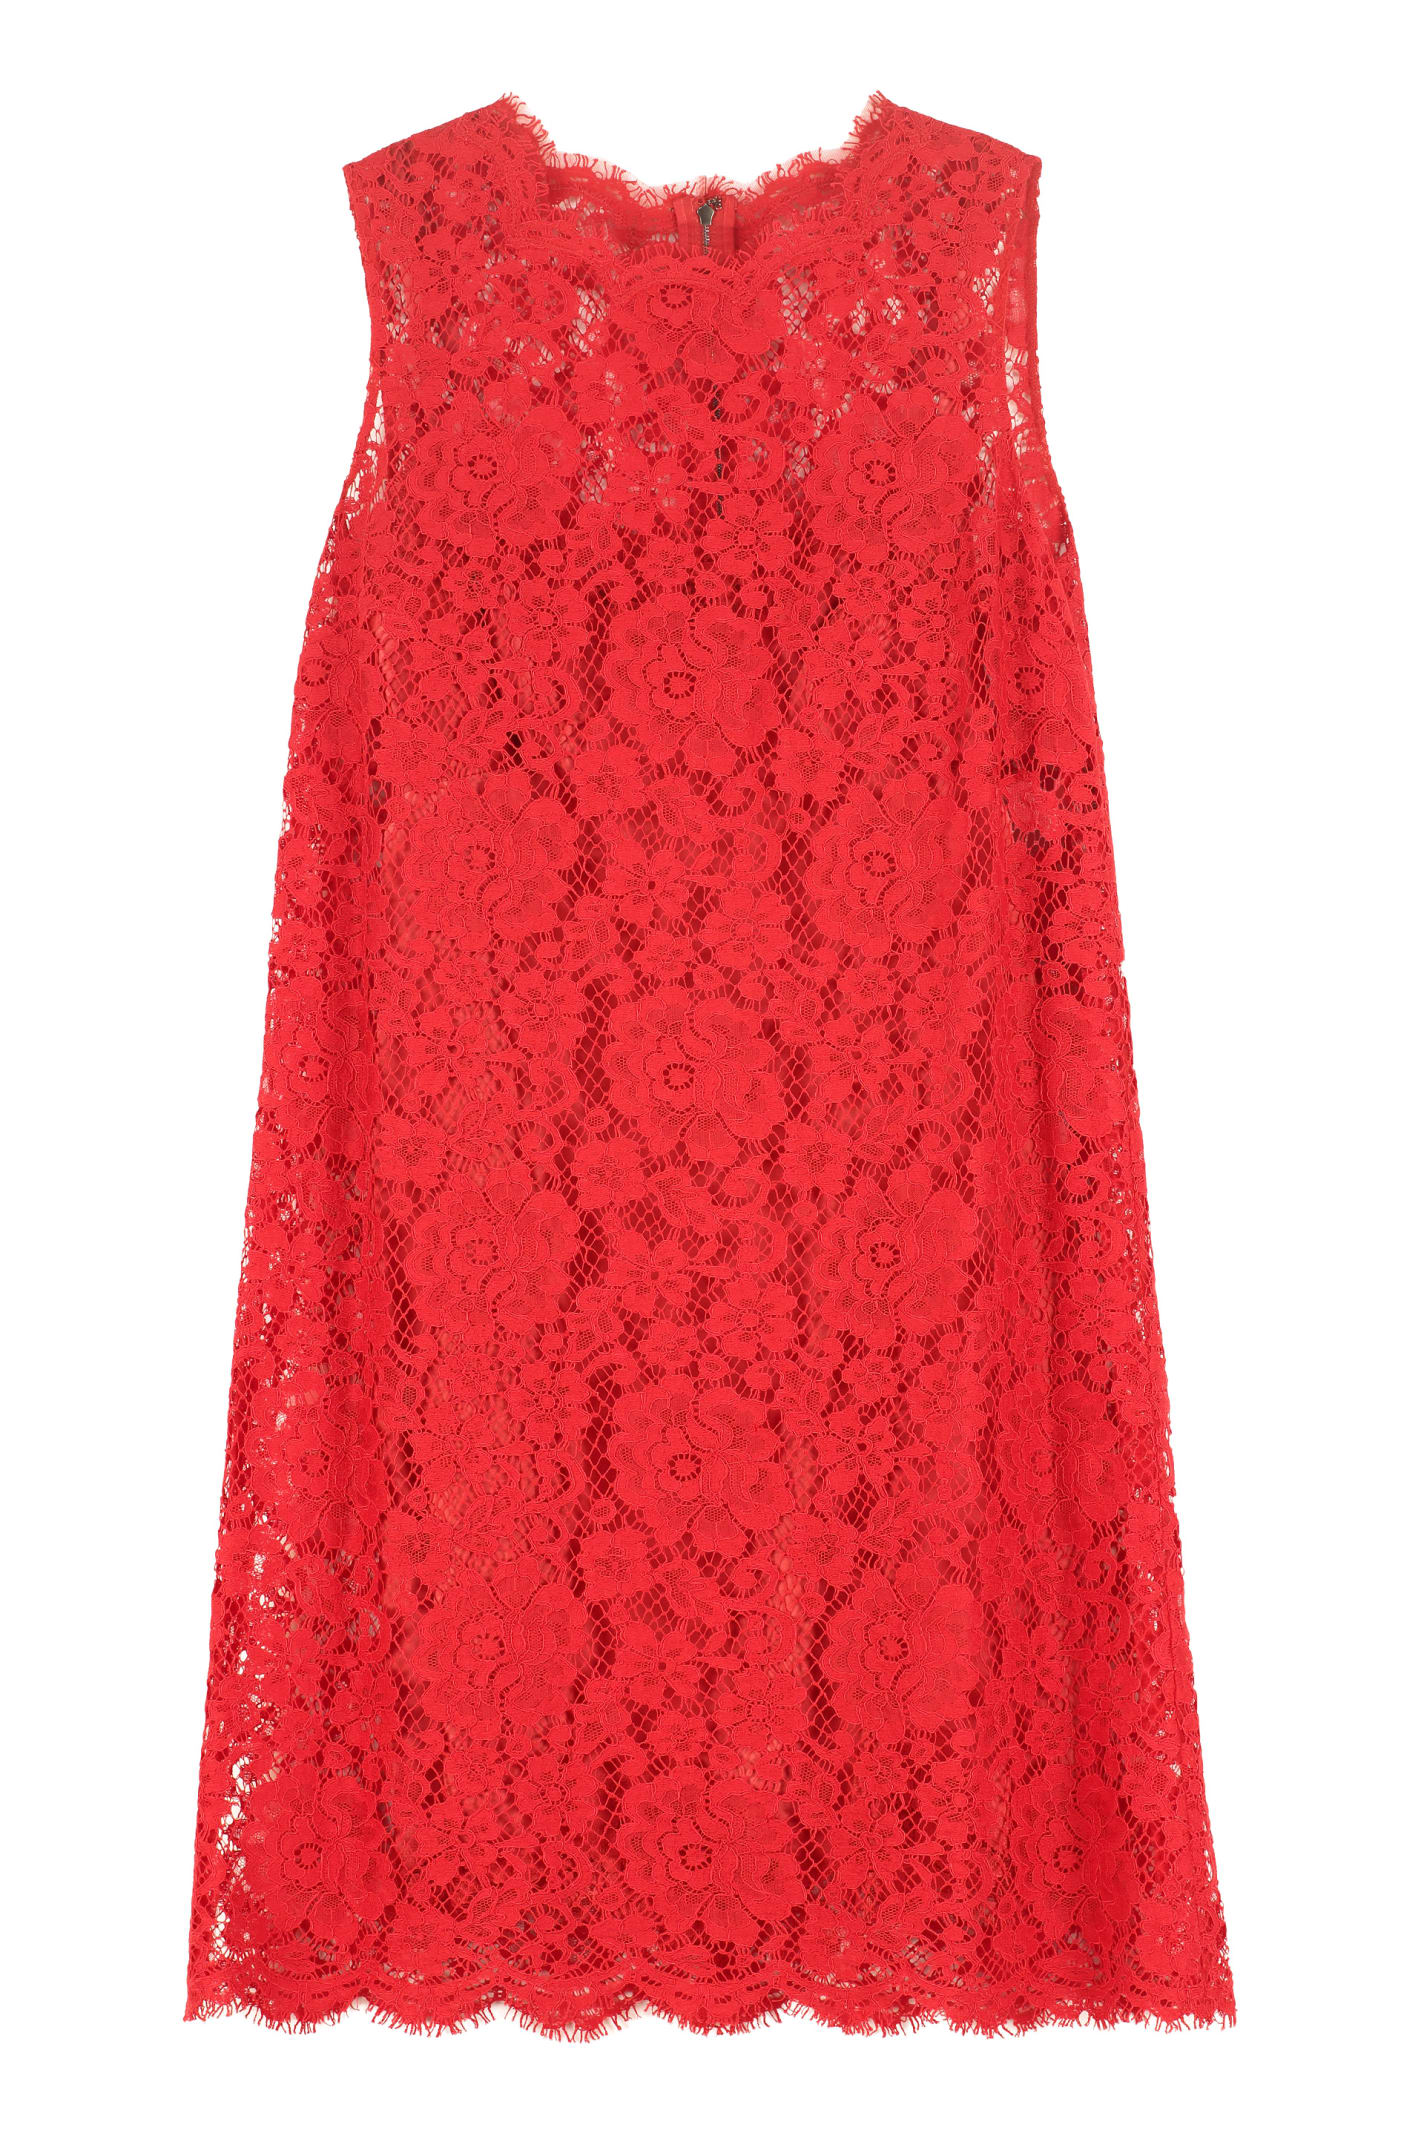 Dolce & Gabbana Lace Sheath Dress